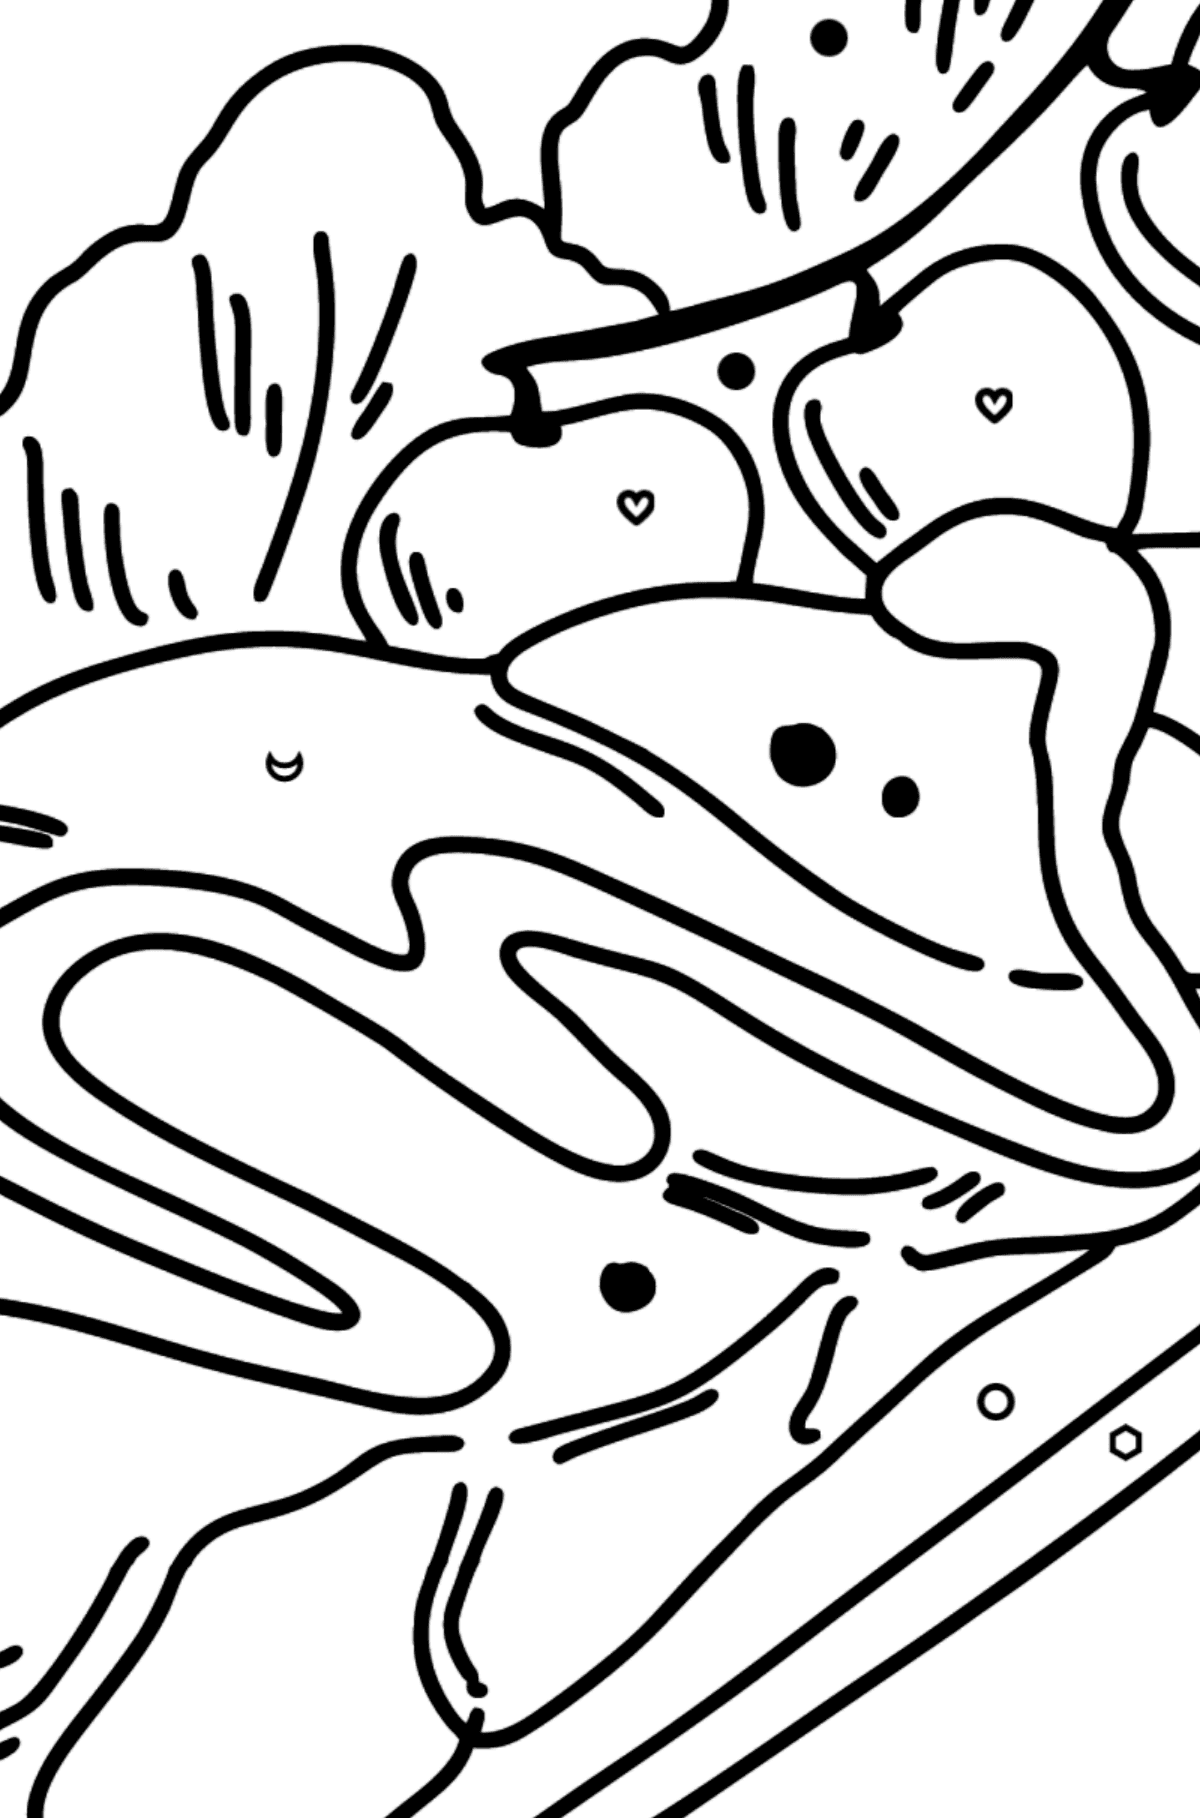 Boyama sayfası ton balıklı salata - Sembollere ve Geometrik Şekillerle Boyama çocuklar için